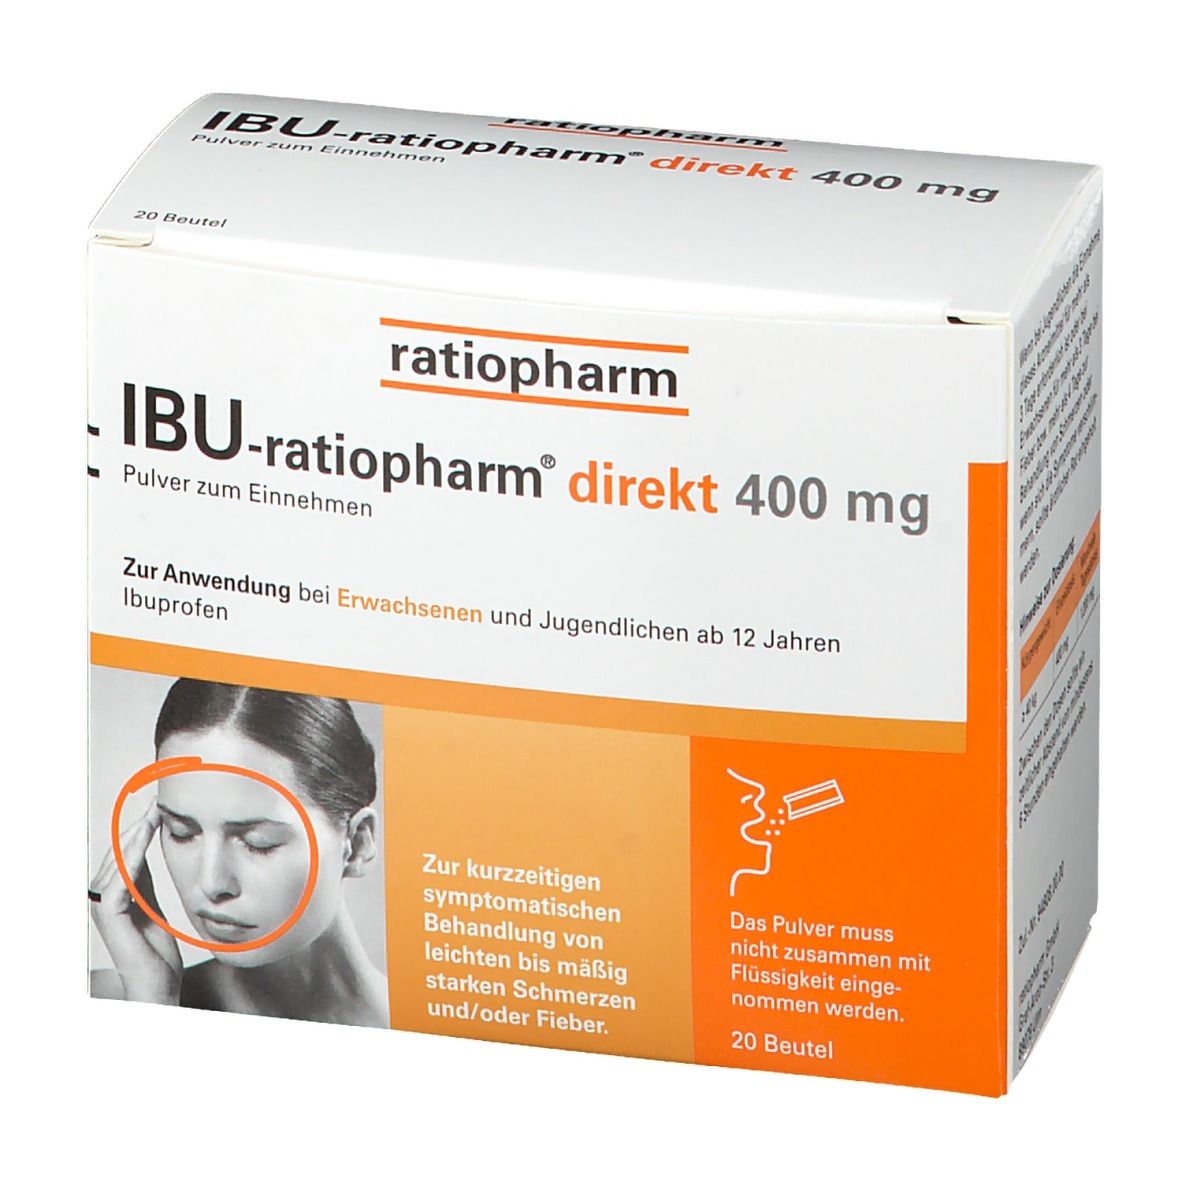 Ibuprofen einnehmen und penicillin zusammen Antibiotika und